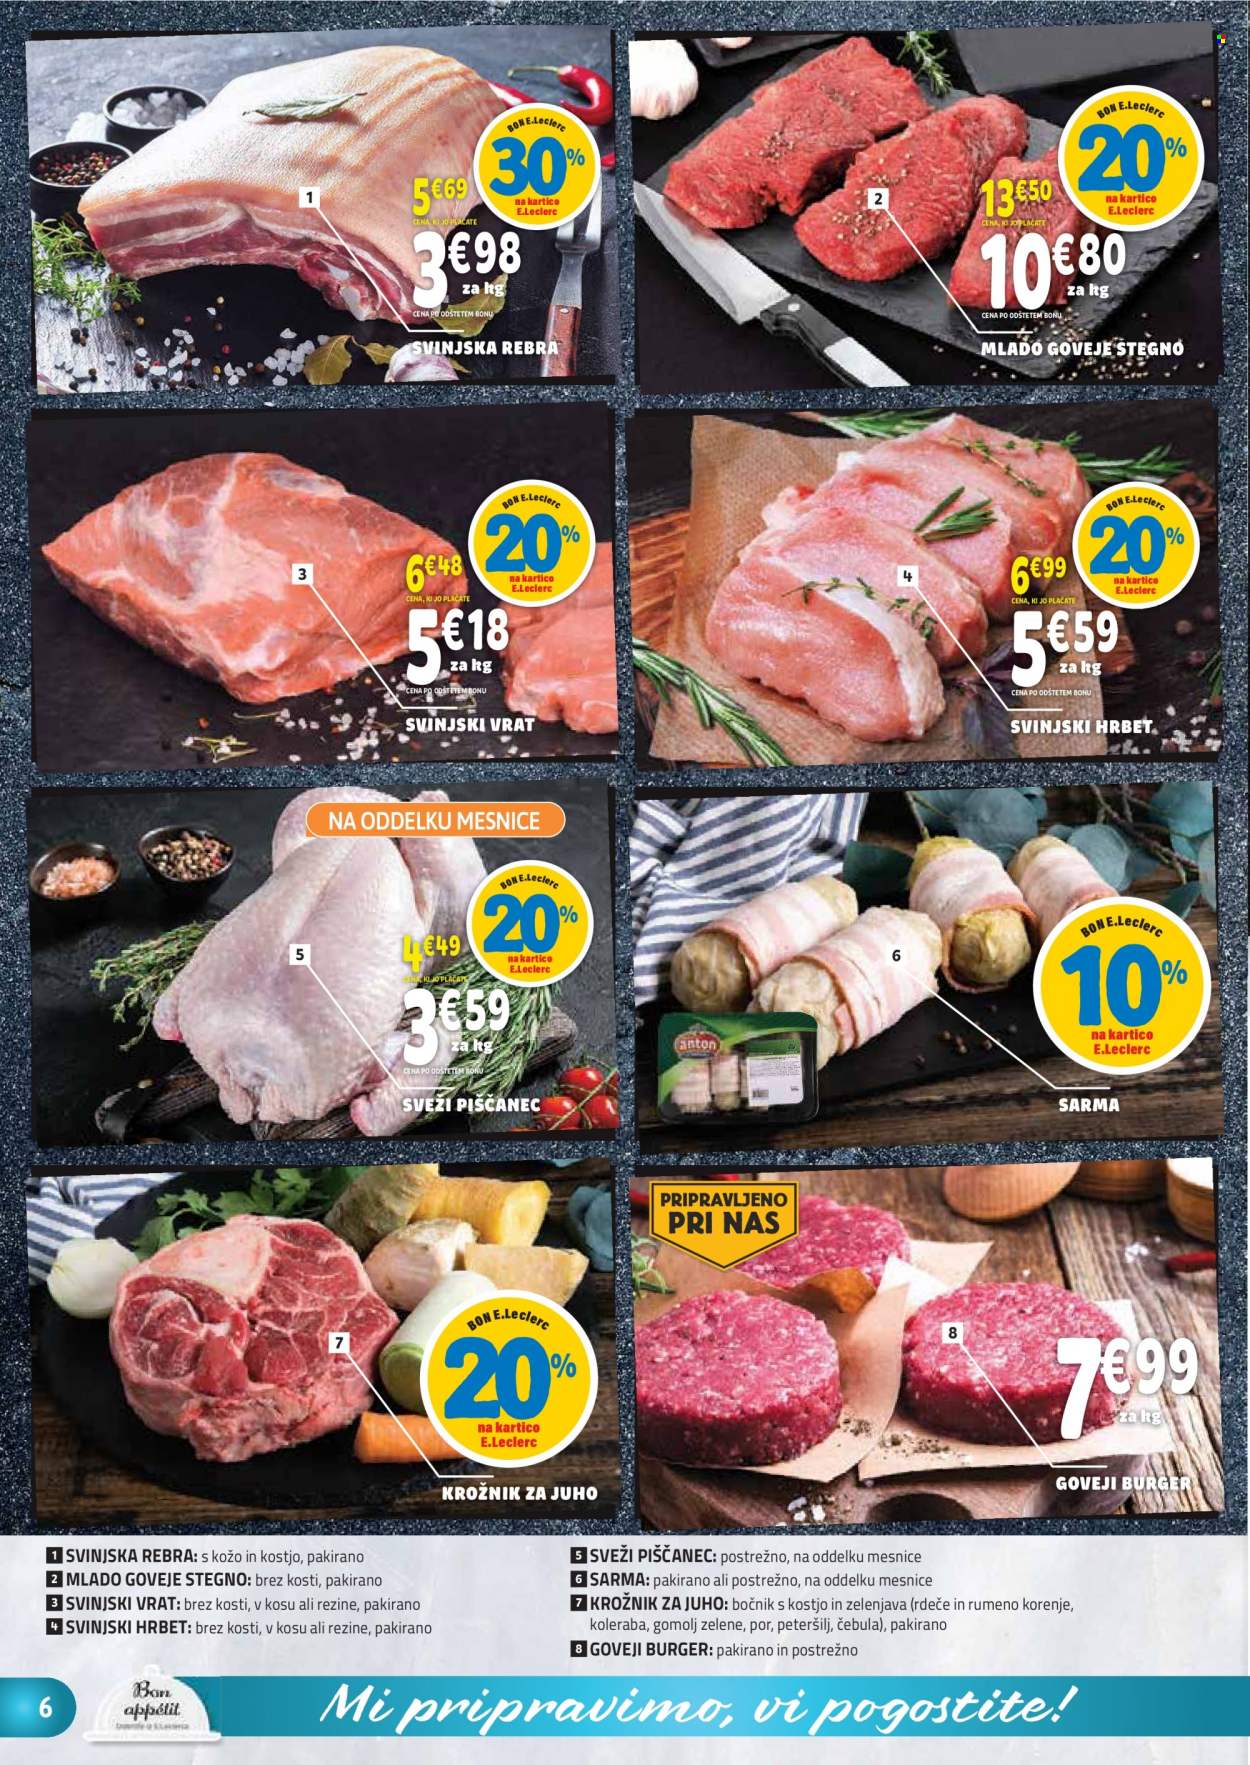 thumbnail - E.Leclerc katalog - 7.2.2023 - 18.2.2023 - Ponudba izdelkov - stegno, piščanec, piščančje meso, goveje meso, rebra, goveje stegno, burger, goveji burger, svinjska rebra, svinjski vrat, svinjsko meso, čebula, korenje, krožnik. Stran 6.